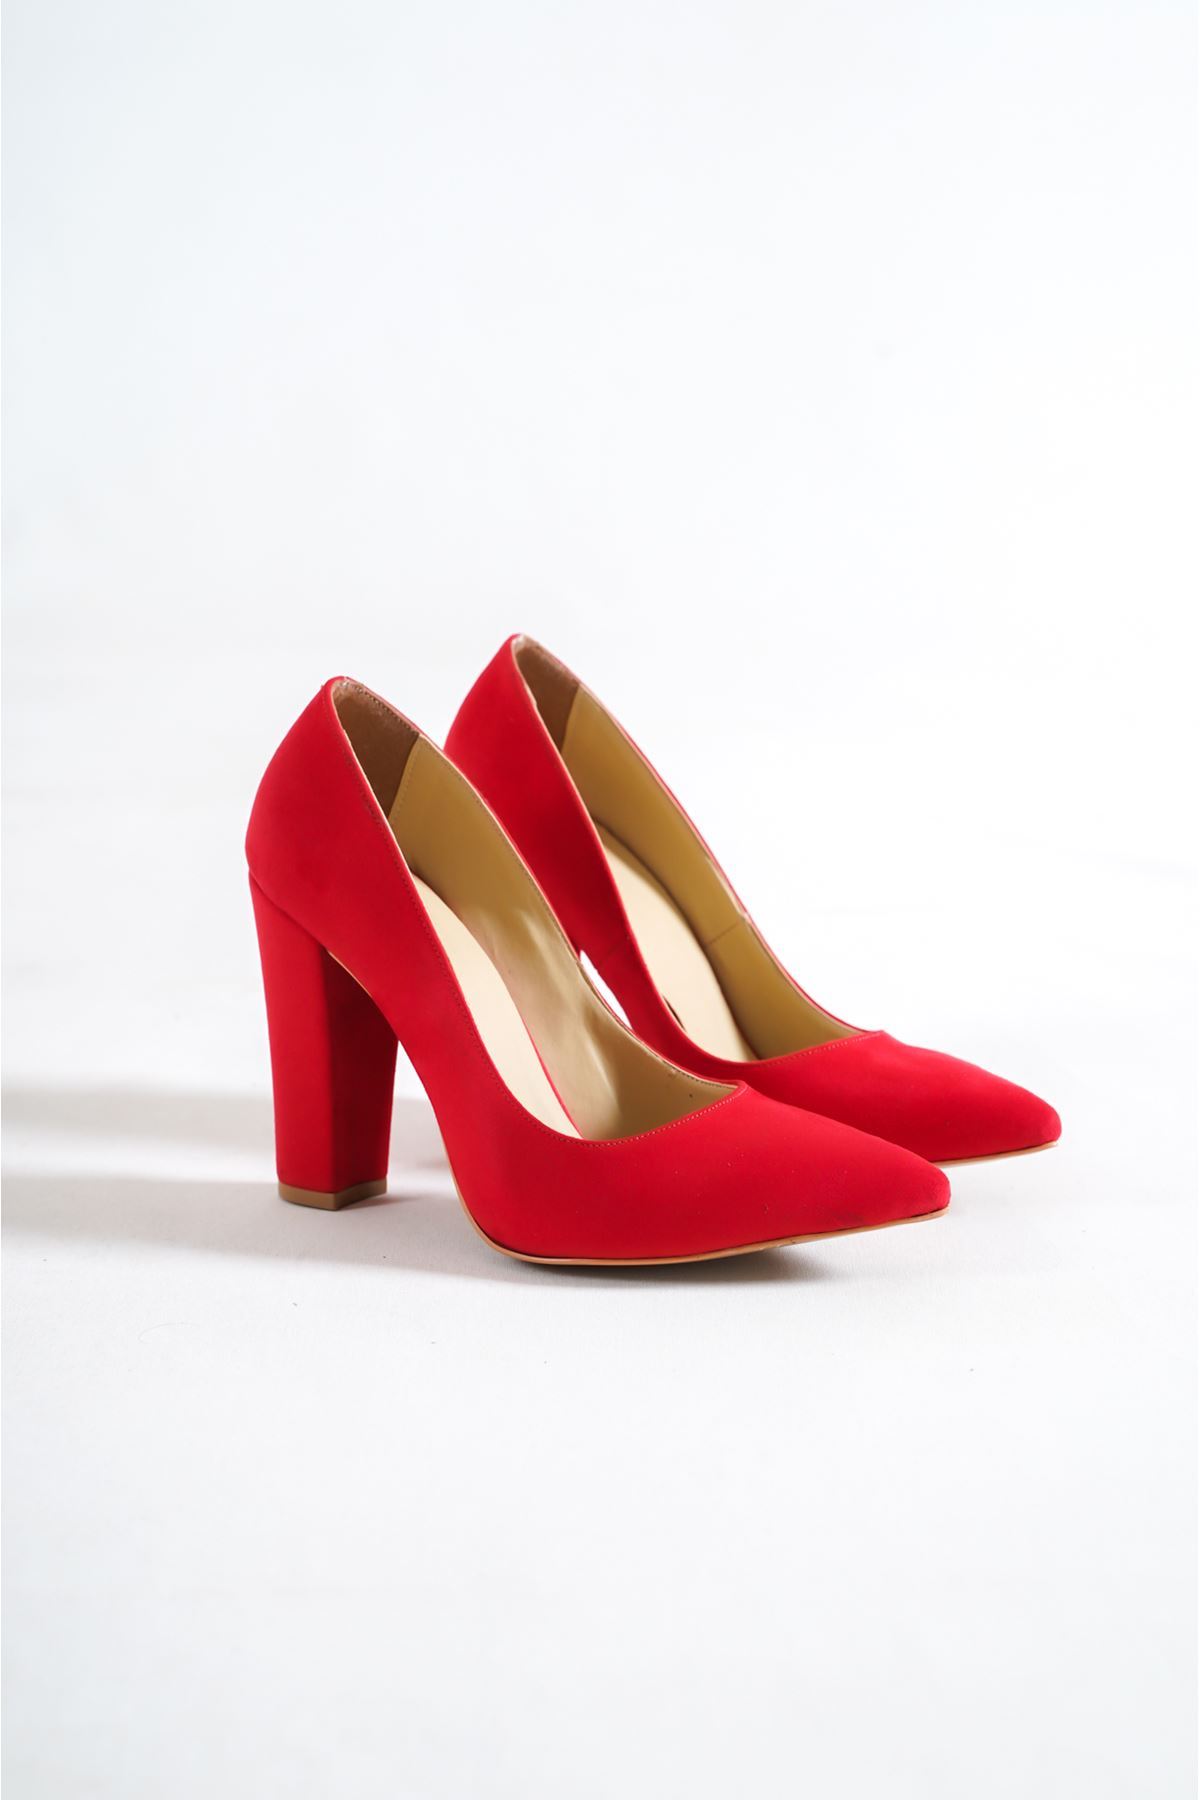 Tokyo Kırmızı Süet Kadın Kalın Topuklu Ayakkabı Stiletto